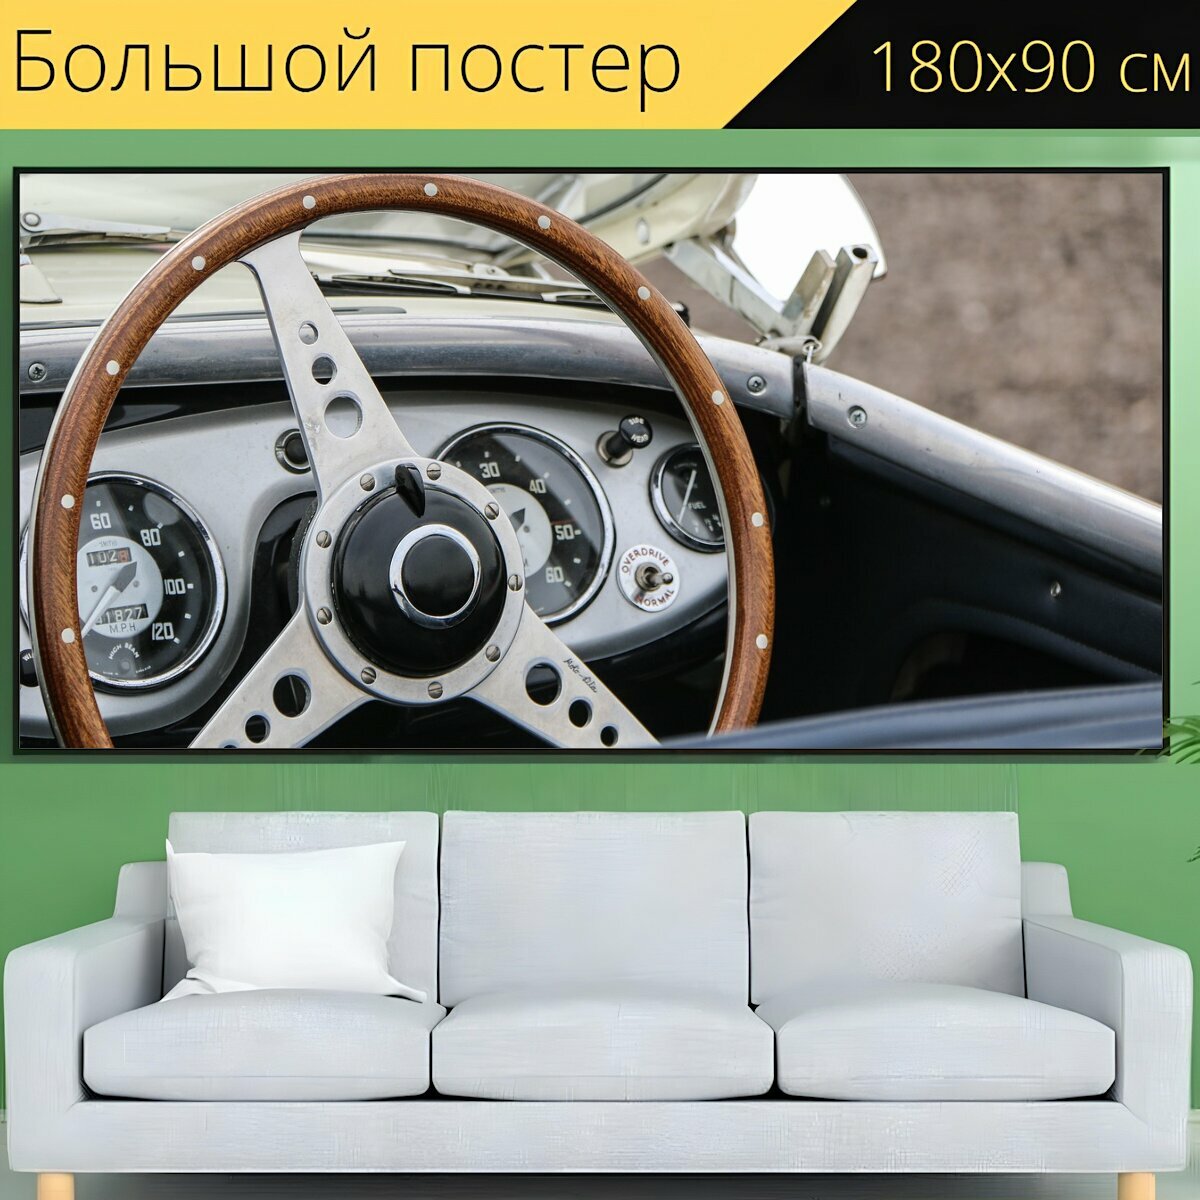 Большой постер "Рулевое колесо, колесо, рулевое управление" 180 x 90 см. для интерьера